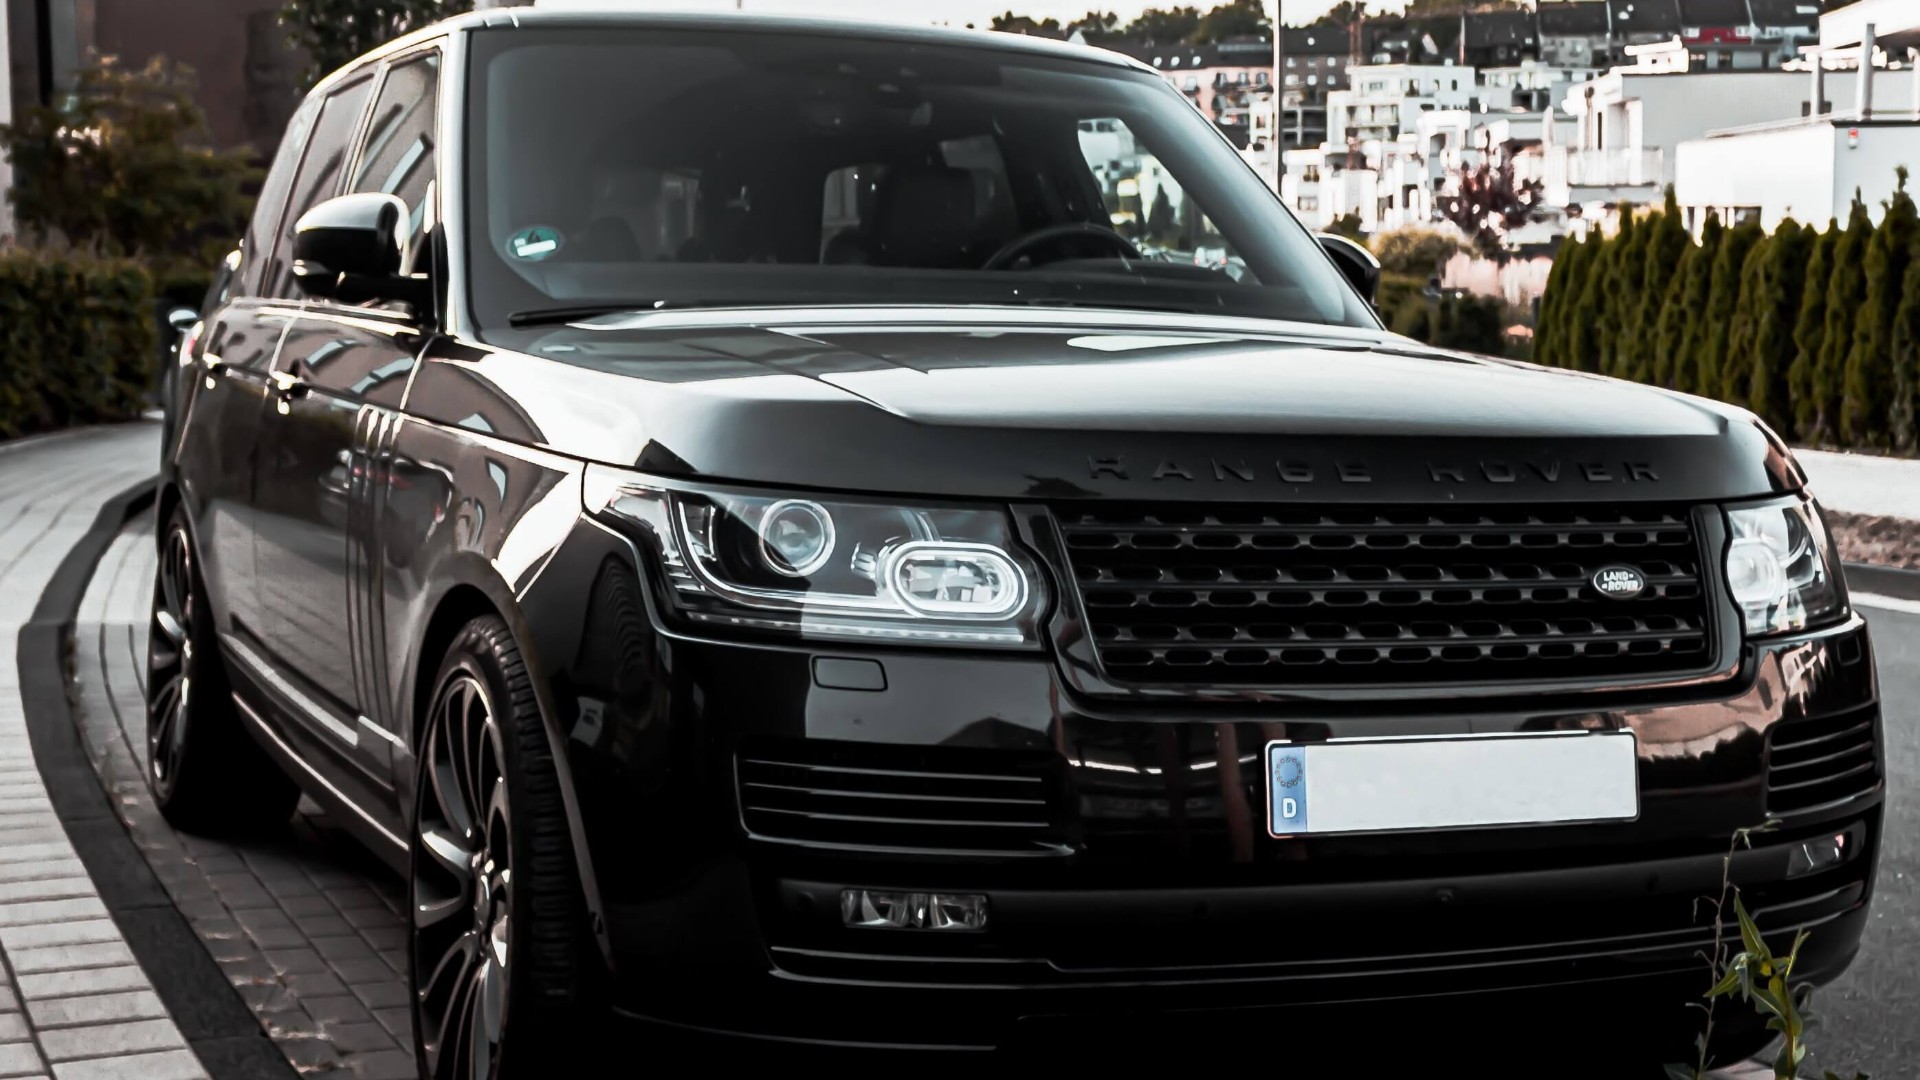 Range Rover Insurance Header Image